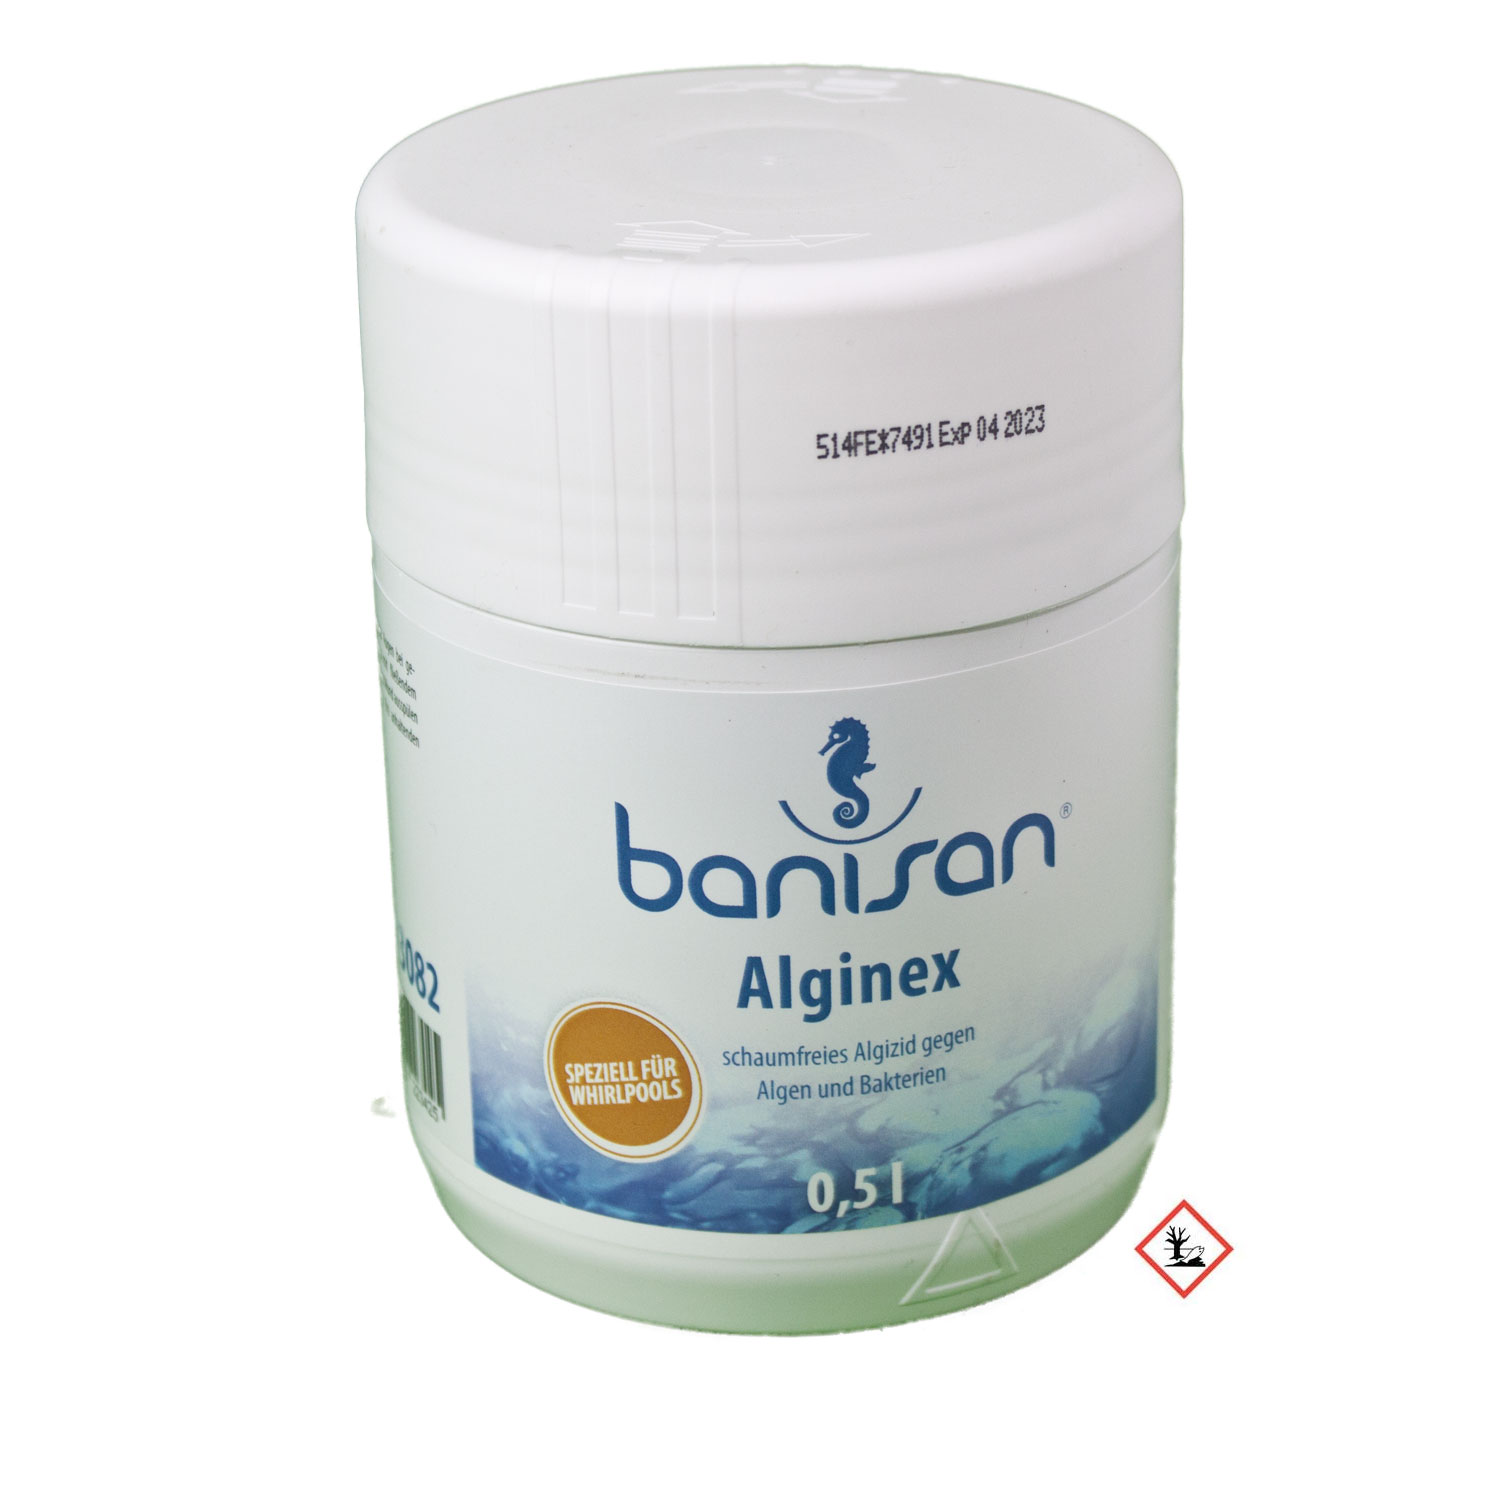 Banisan Alginex Antialgenmittel 500 ml